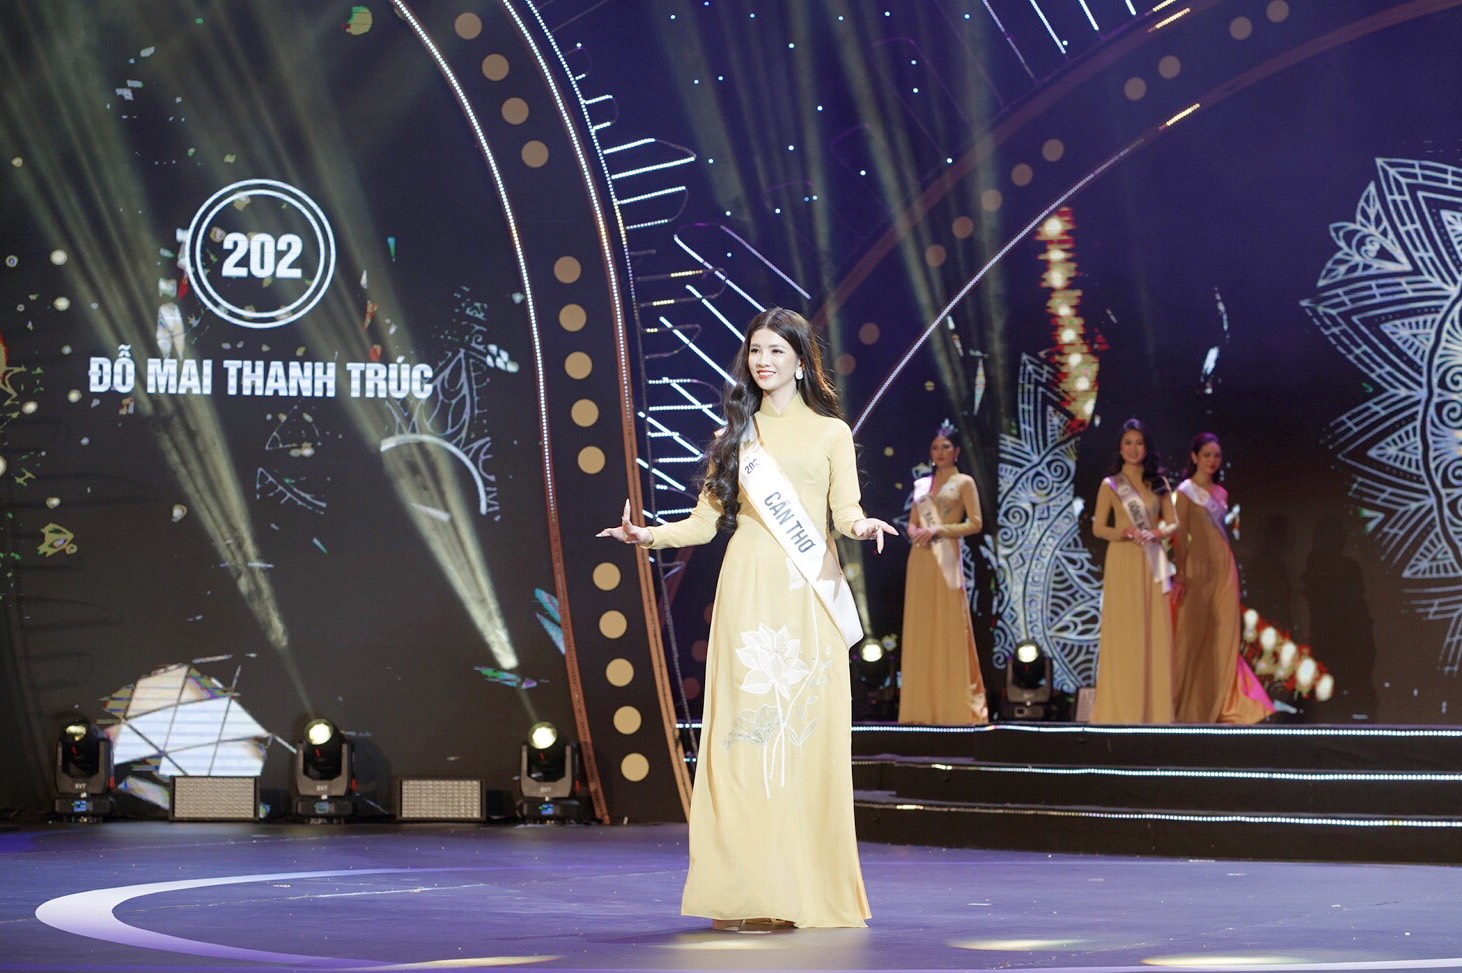 Bán kết Hoa hậu Du lịch Việt Nam 2022: Cháy’ hết mình trên sân khấu, 40 thí sinh xuất sắc đi tiếp vào đêm Chung kết - Ảnh 2.